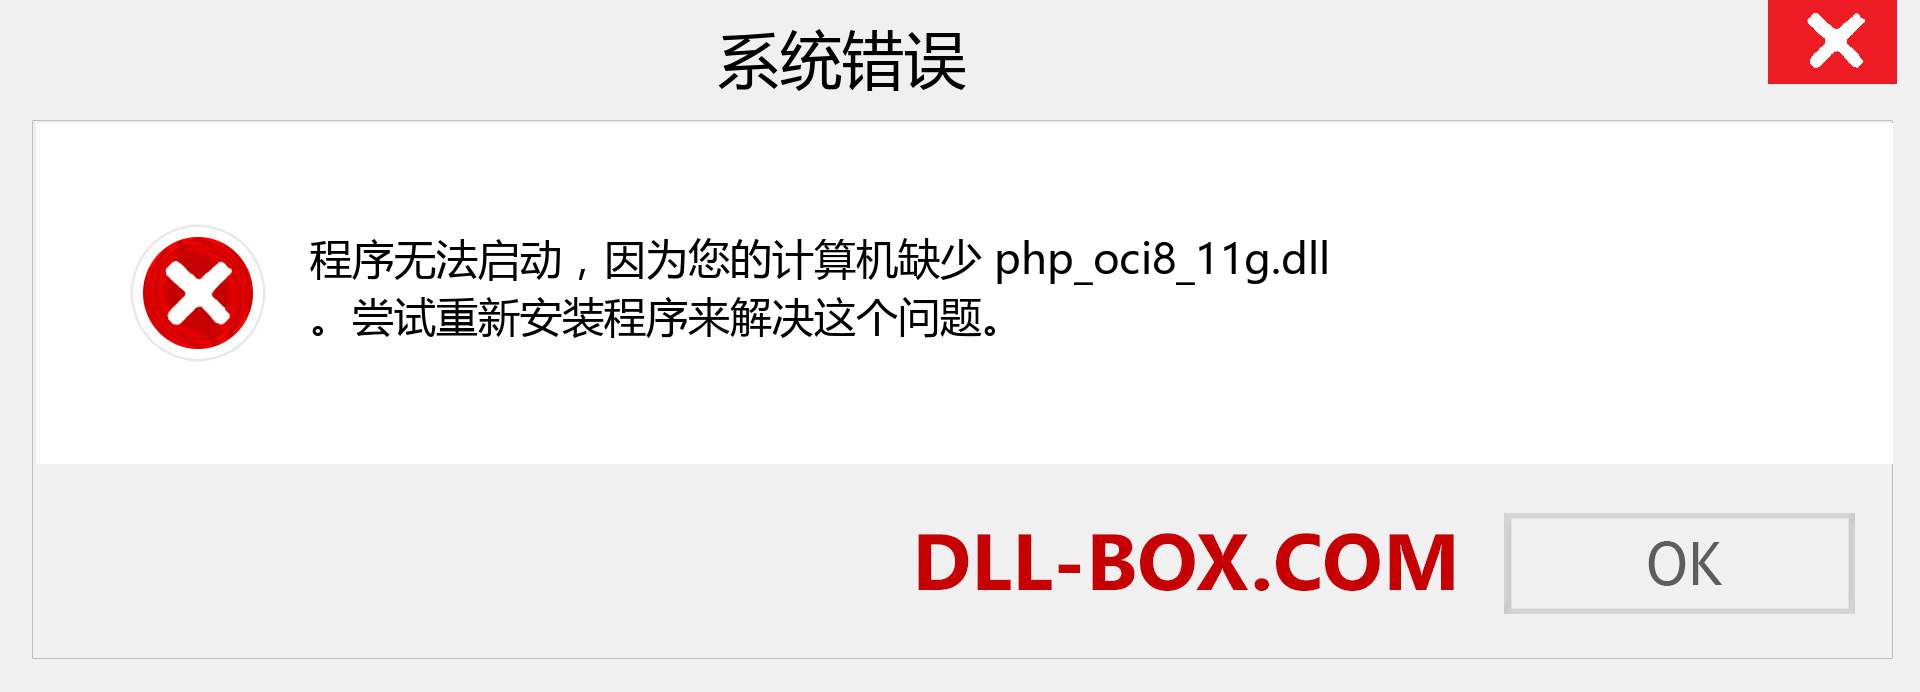 php_oci8_11g.dll 文件丢失？。 适用于 Windows 7、8、10 的下载 - 修复 Windows、照片、图像上的 php_oci8_11g dll 丢失错误